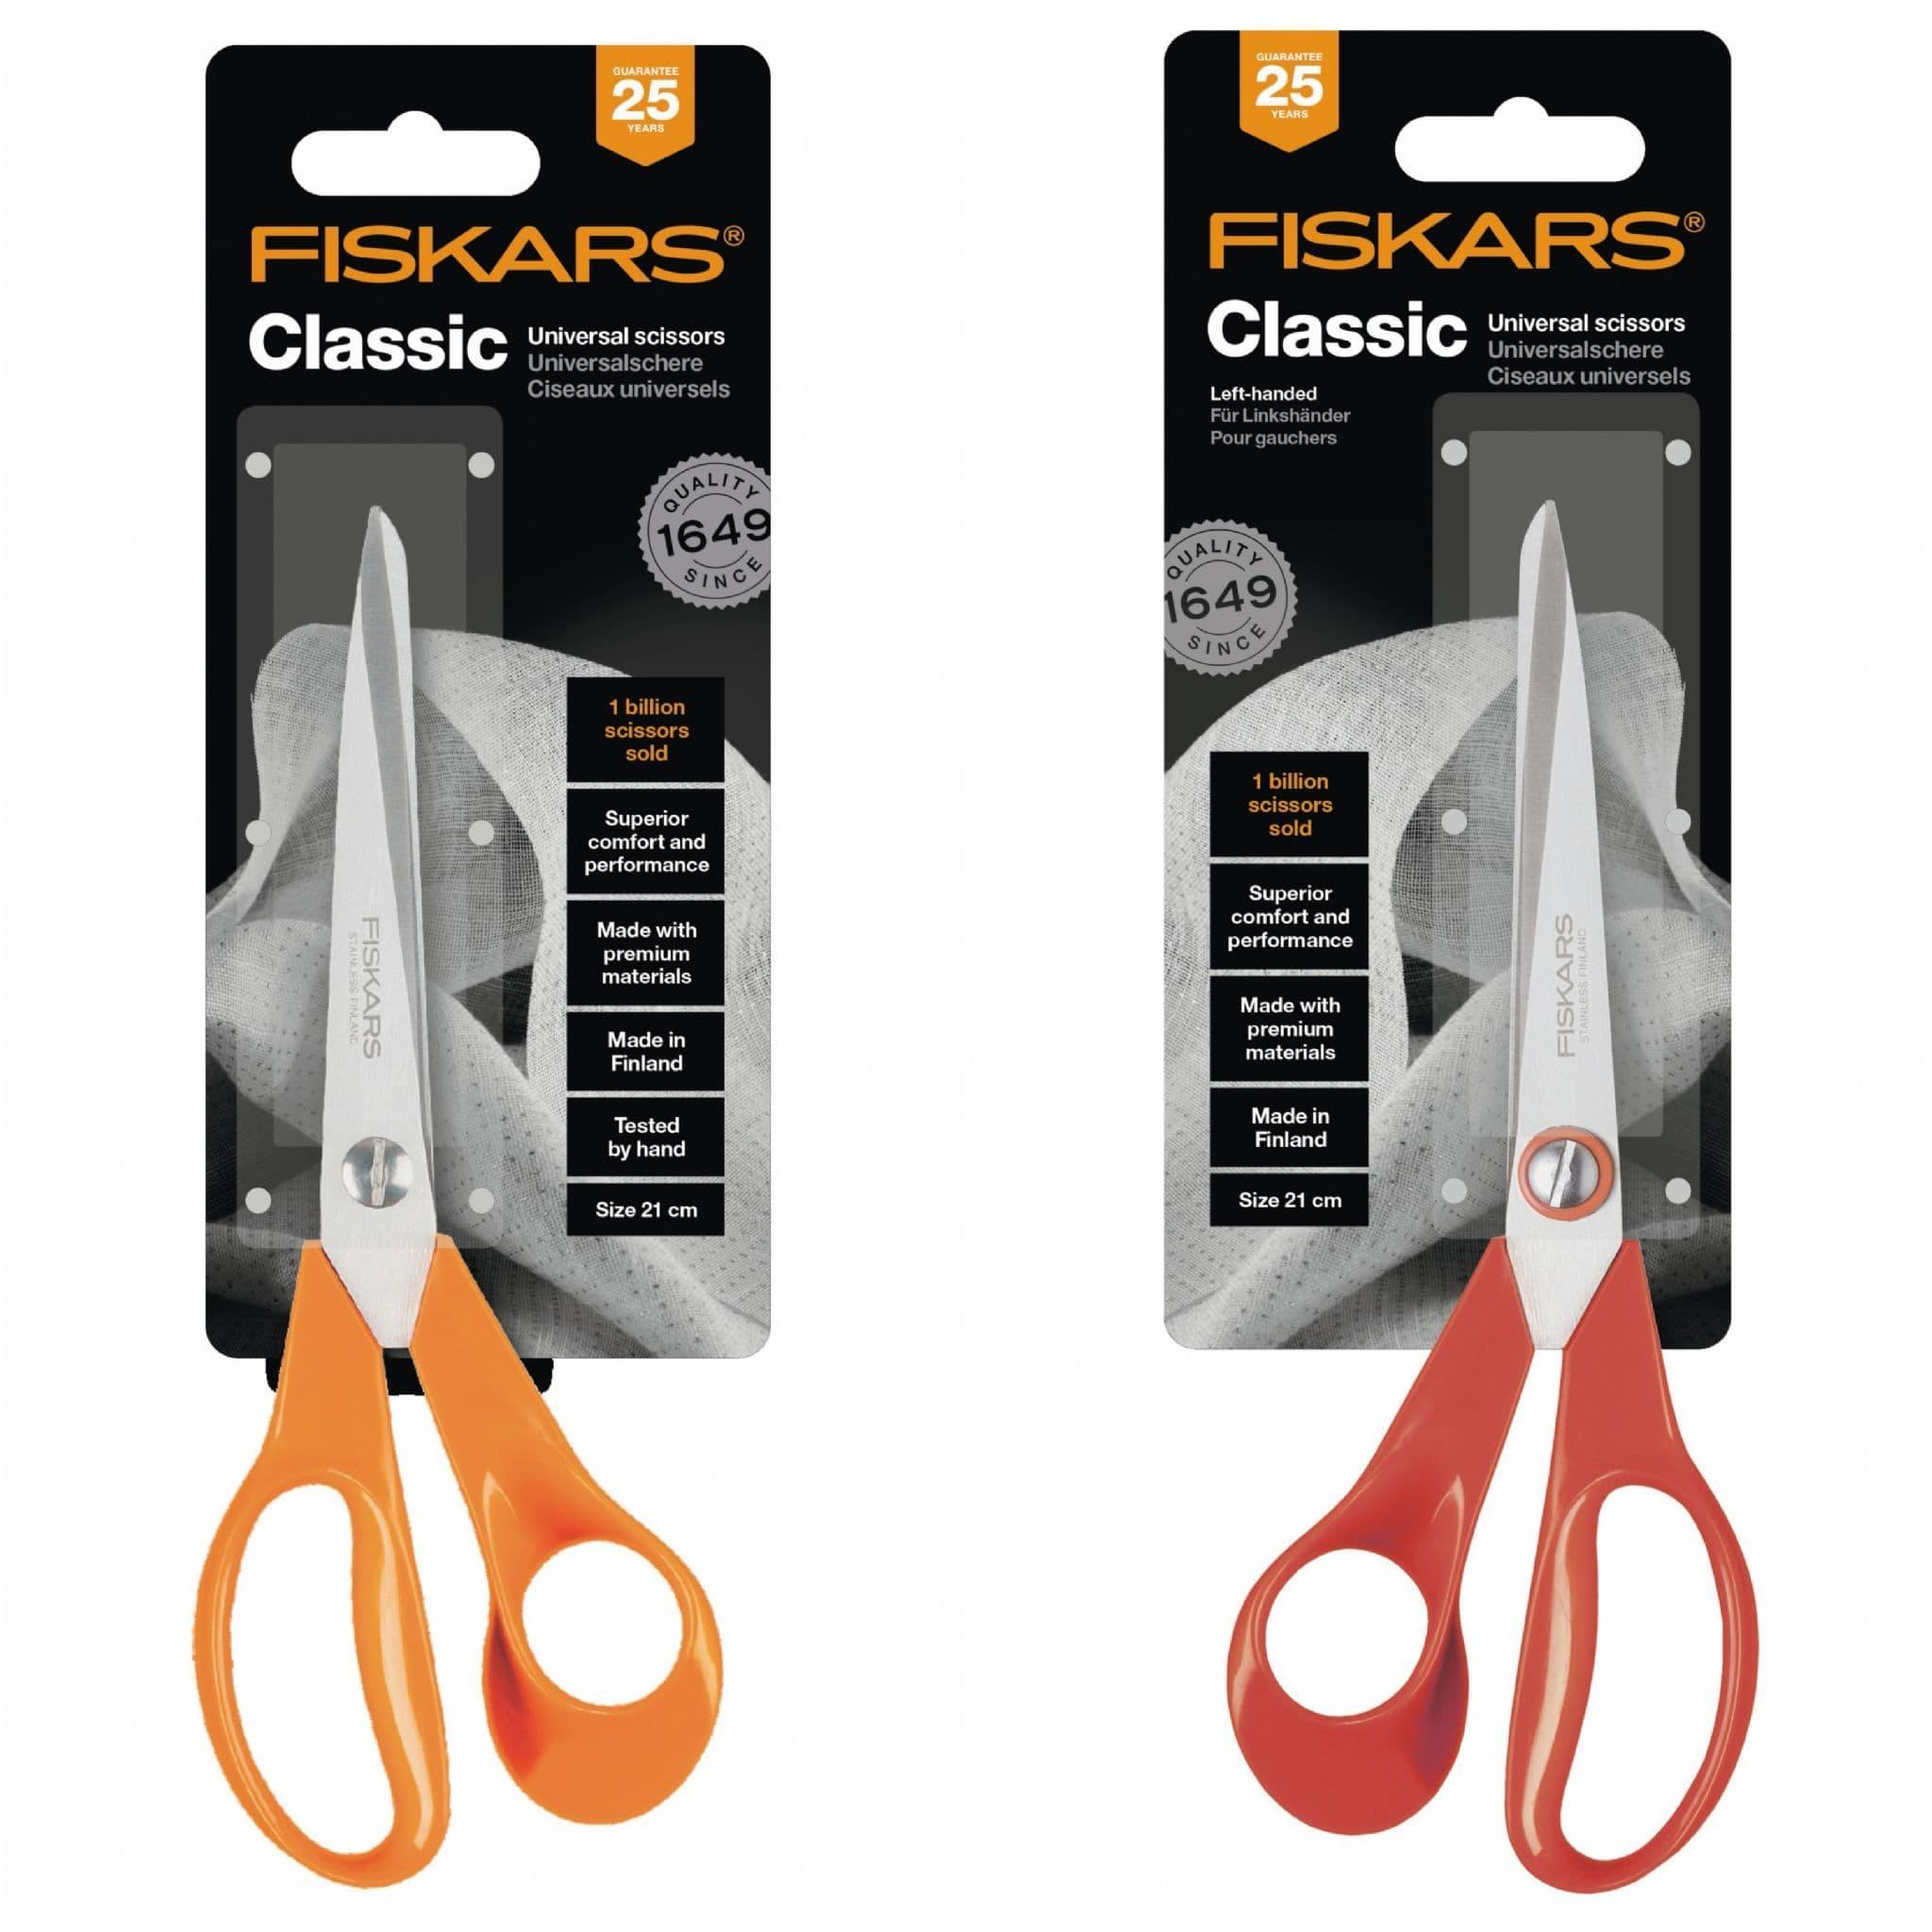 https://cdn.ecommercedns.uk/files/3/252923/6/28121656/fiskars-classic-universal-scissors-21cm-left-or-right-handed-lef.jpg